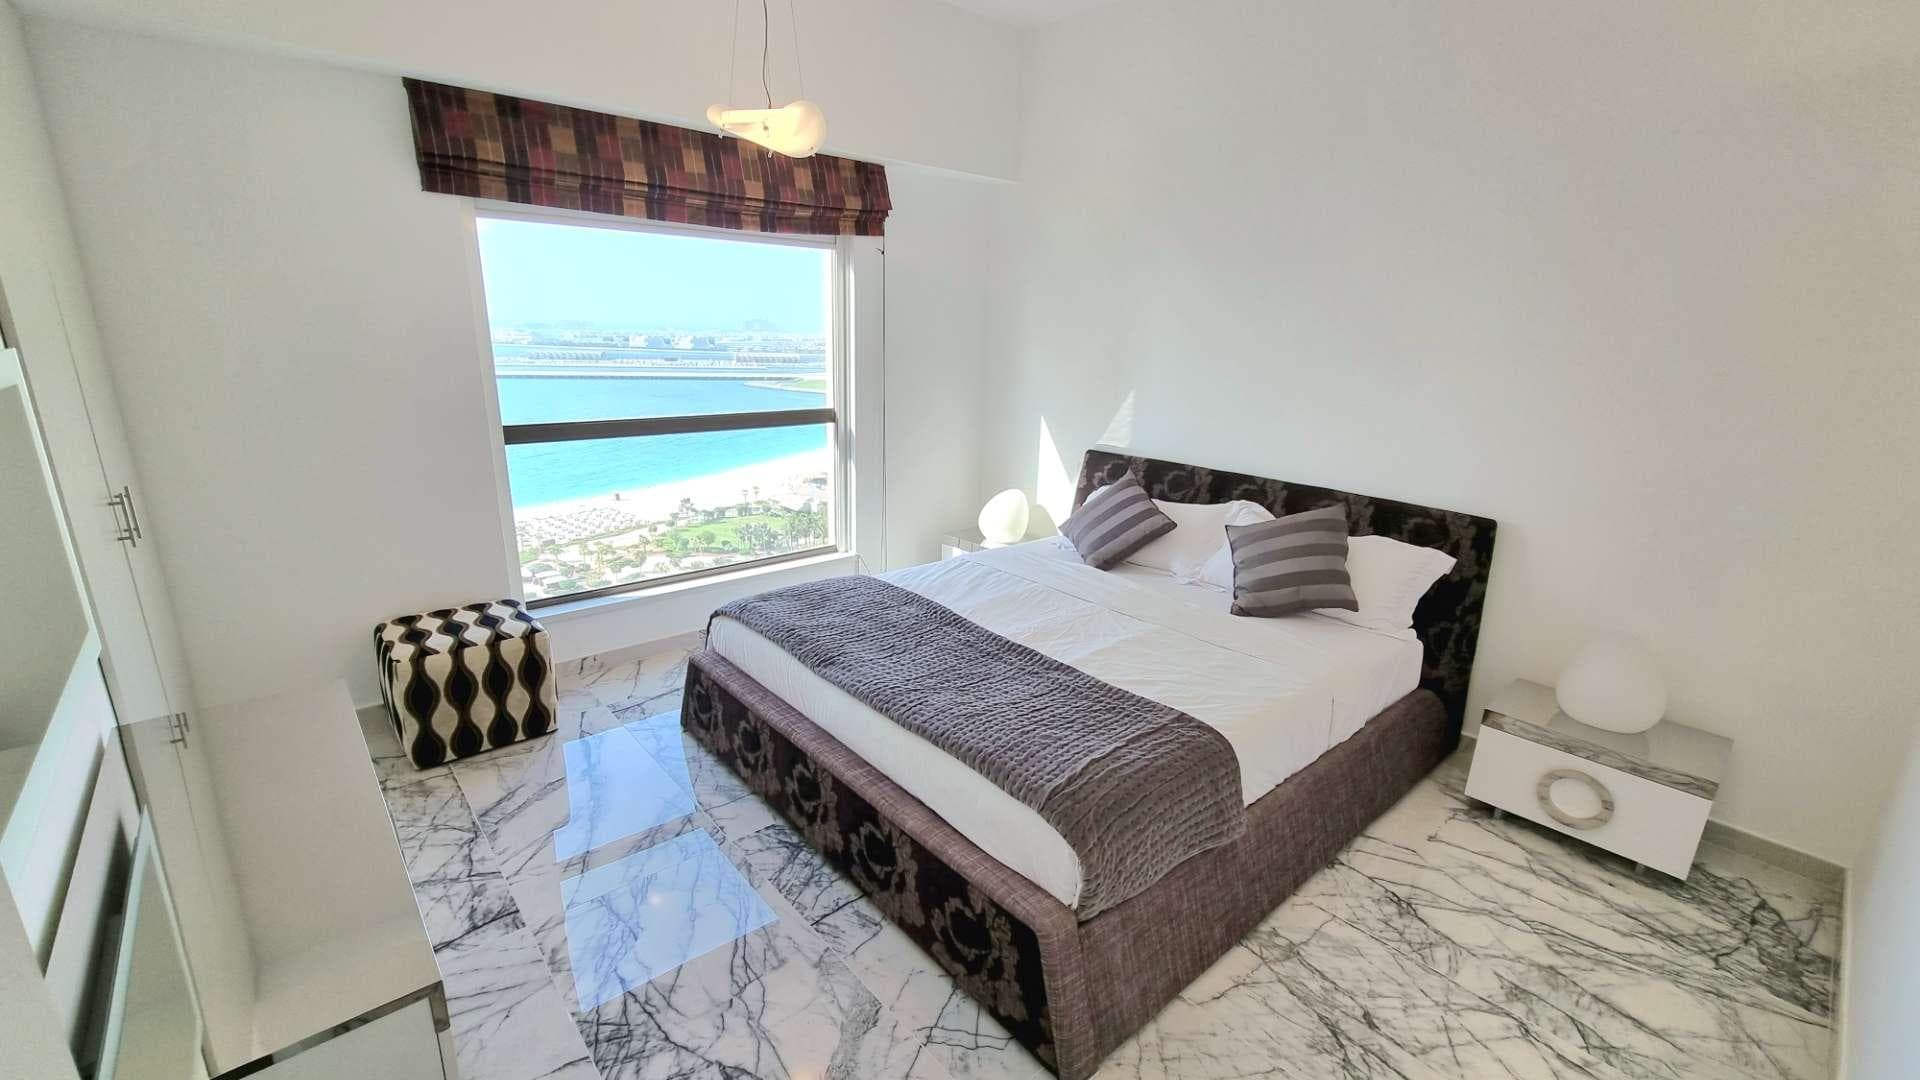 3 Bedroom Apartment For Rent Sadaf Lp32640 5a0d3f70eb38cc0.jpg